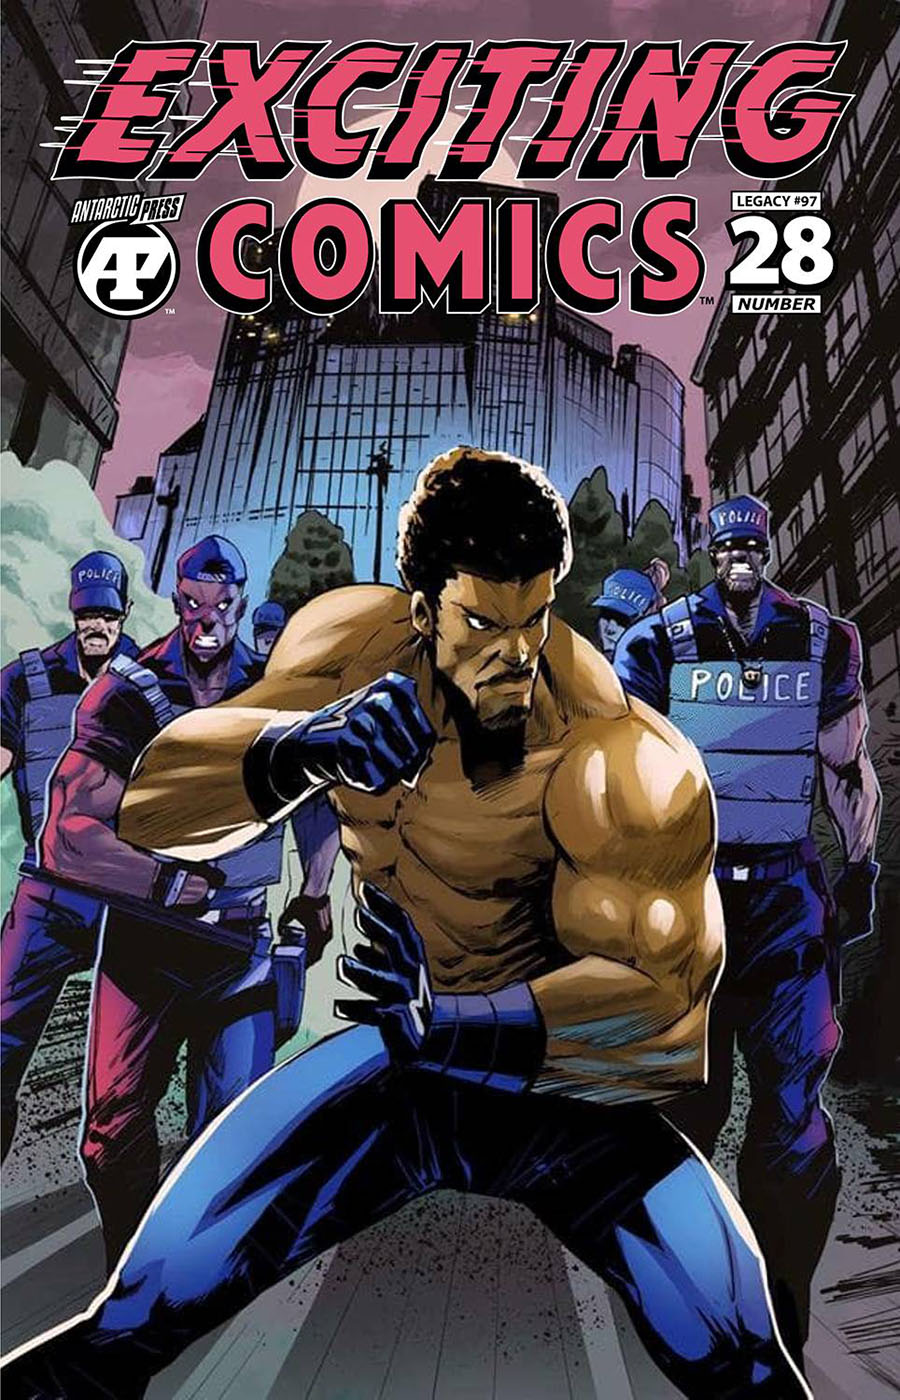 Exciting Comics Vol 2 #28